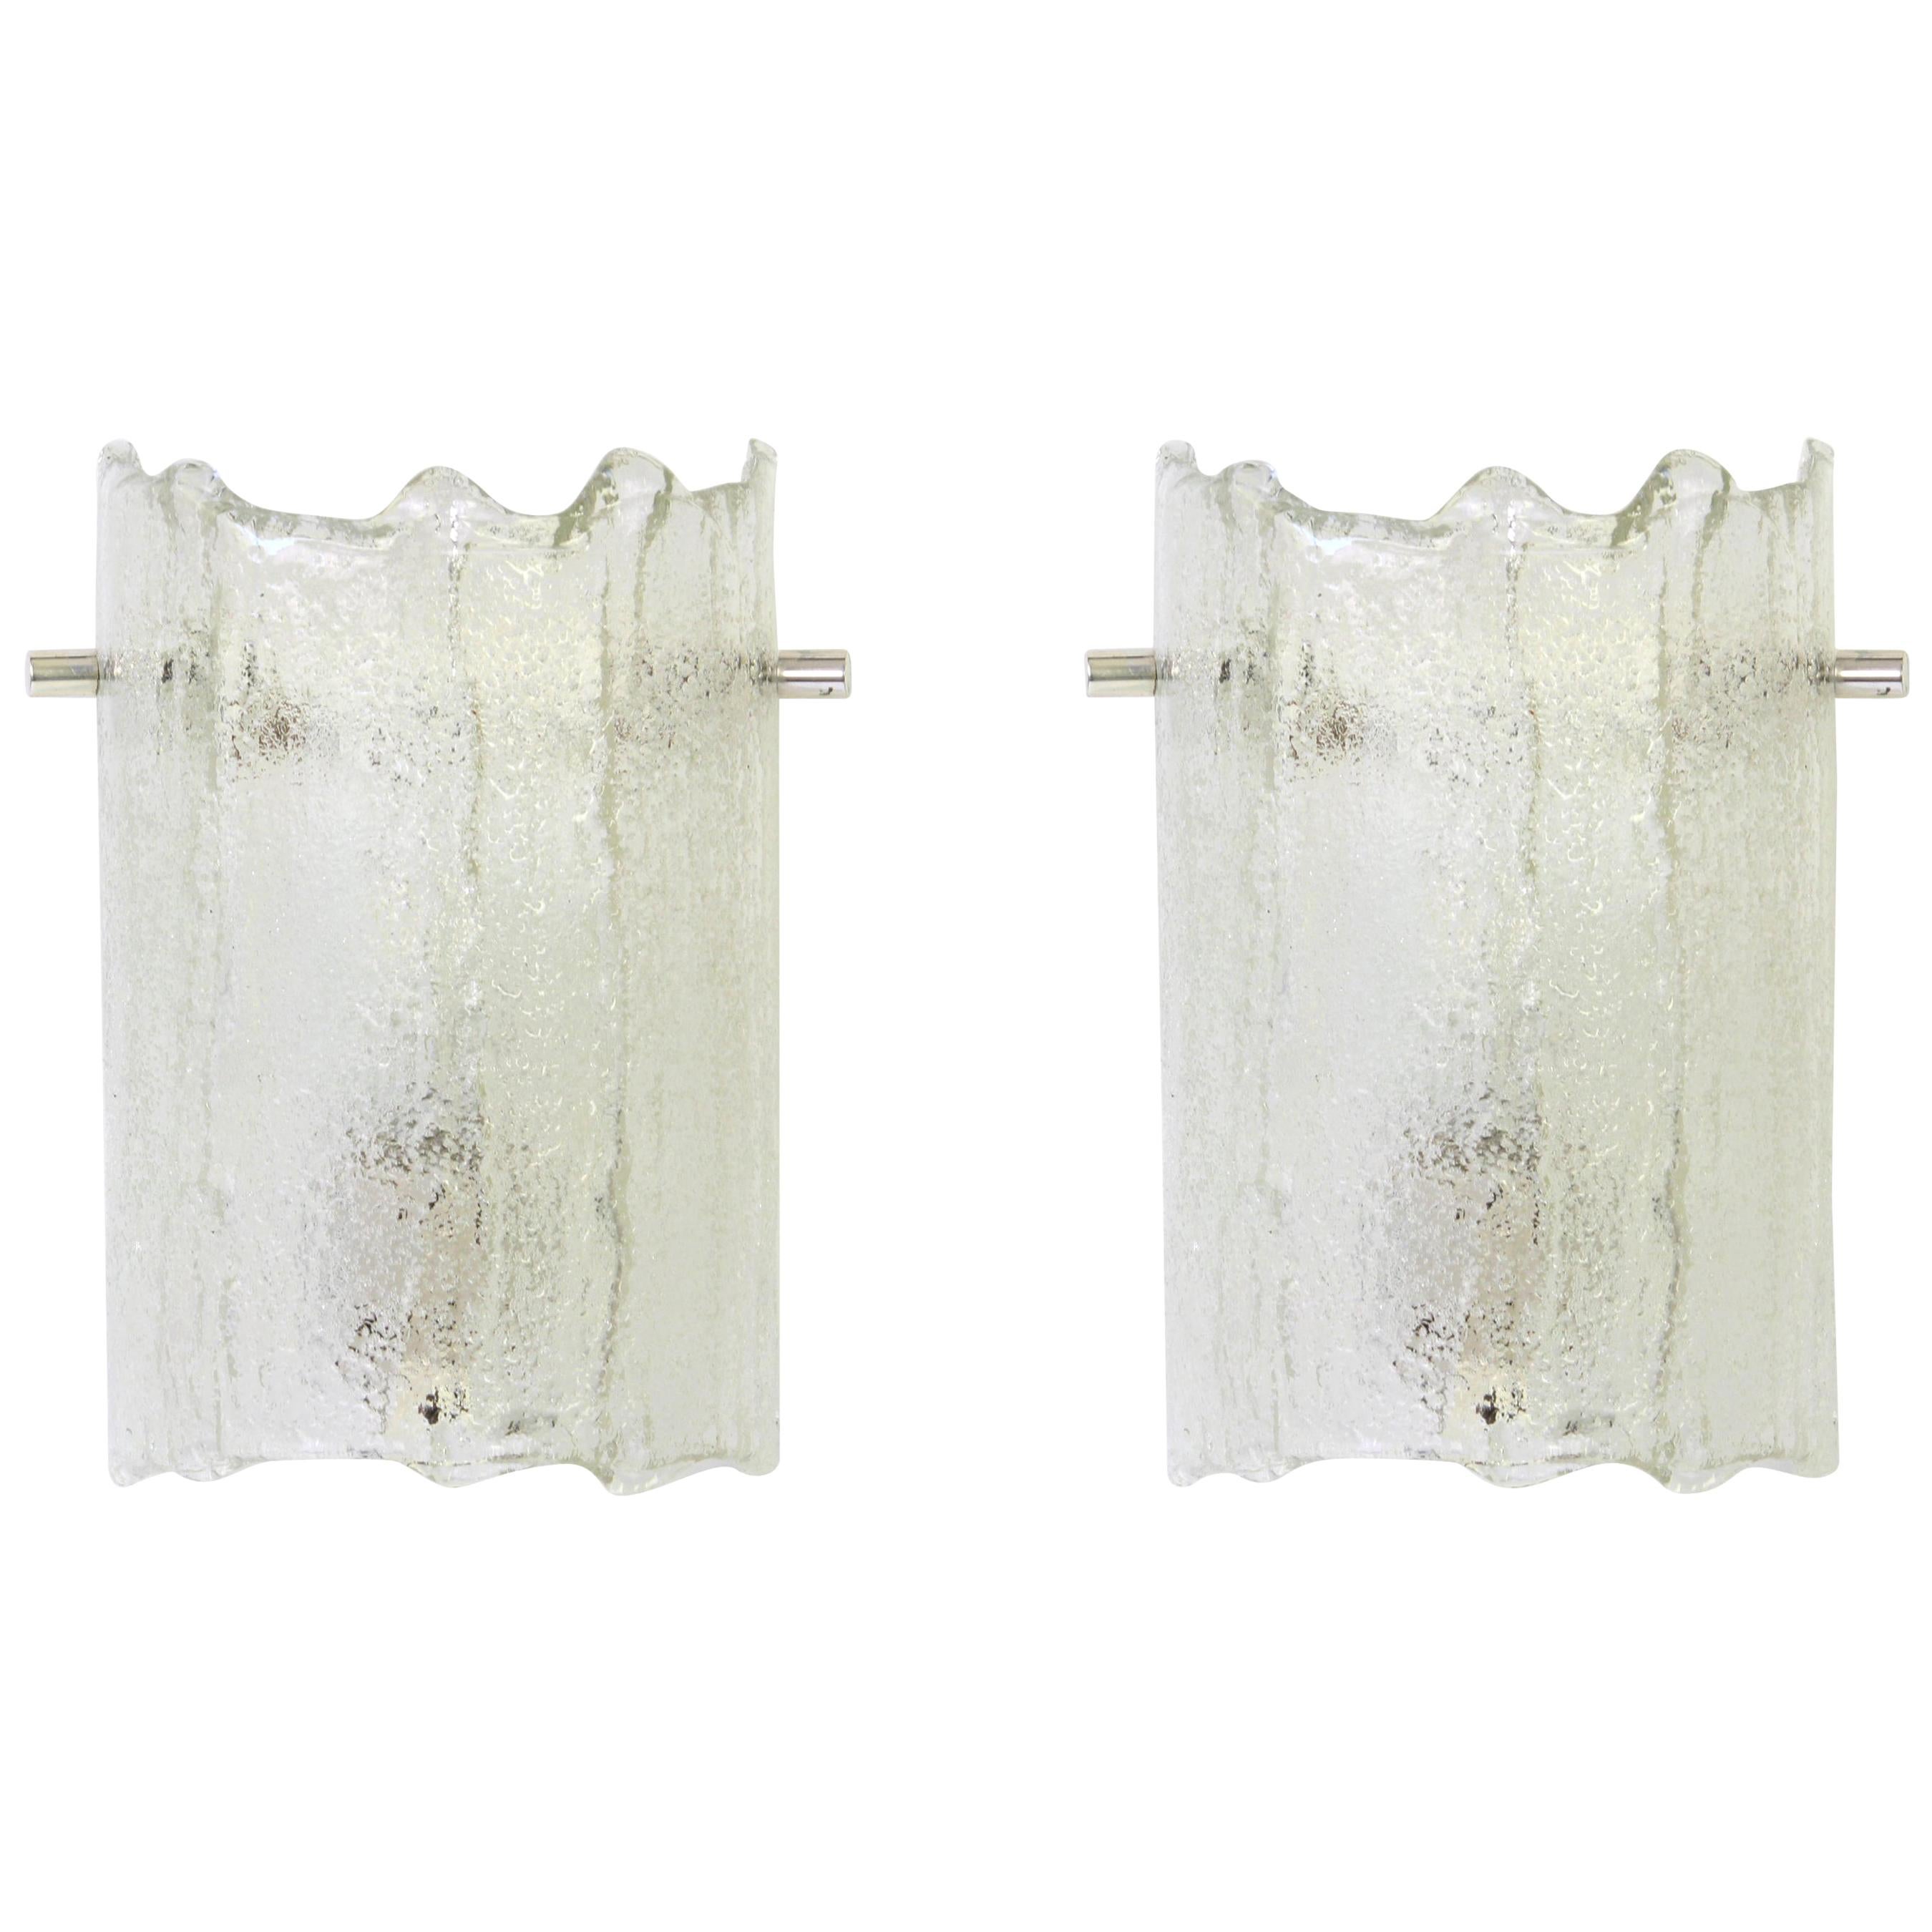 Magnifique paire d'appliques en verre de Murano par Kaiser Leuchten, Allemagne, vers les années 1970.

De grande qualité et en très bon état. Nettoyé, bien câblé et prêt à être utilisé. 

Chaque luminaire nécessite une petite ampoule E14 de 40W max